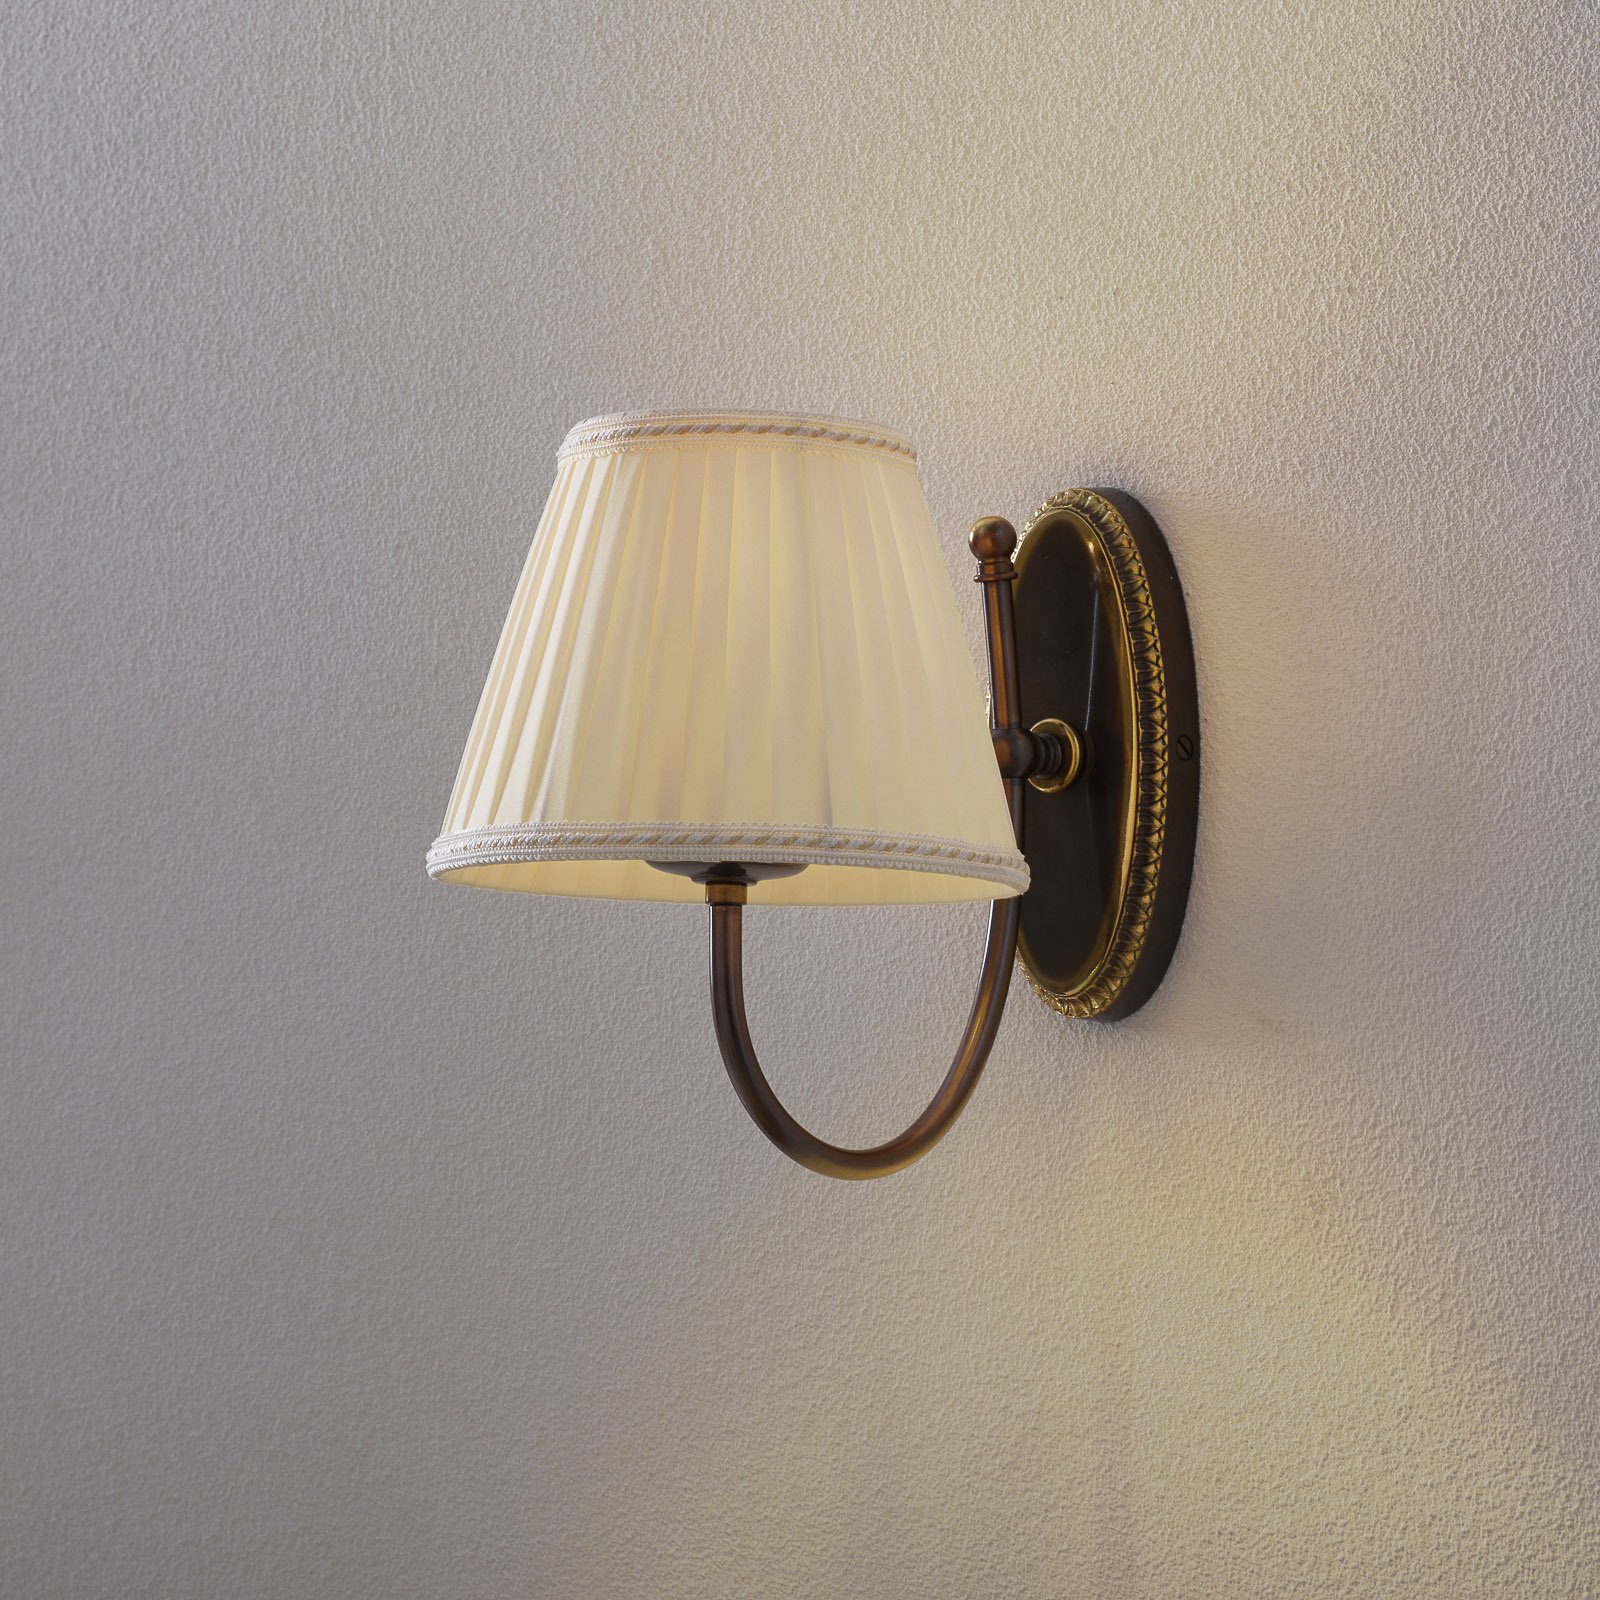 Klasična zidna svjetiljka sa zakrivljenim krakom, 1 žarulja.